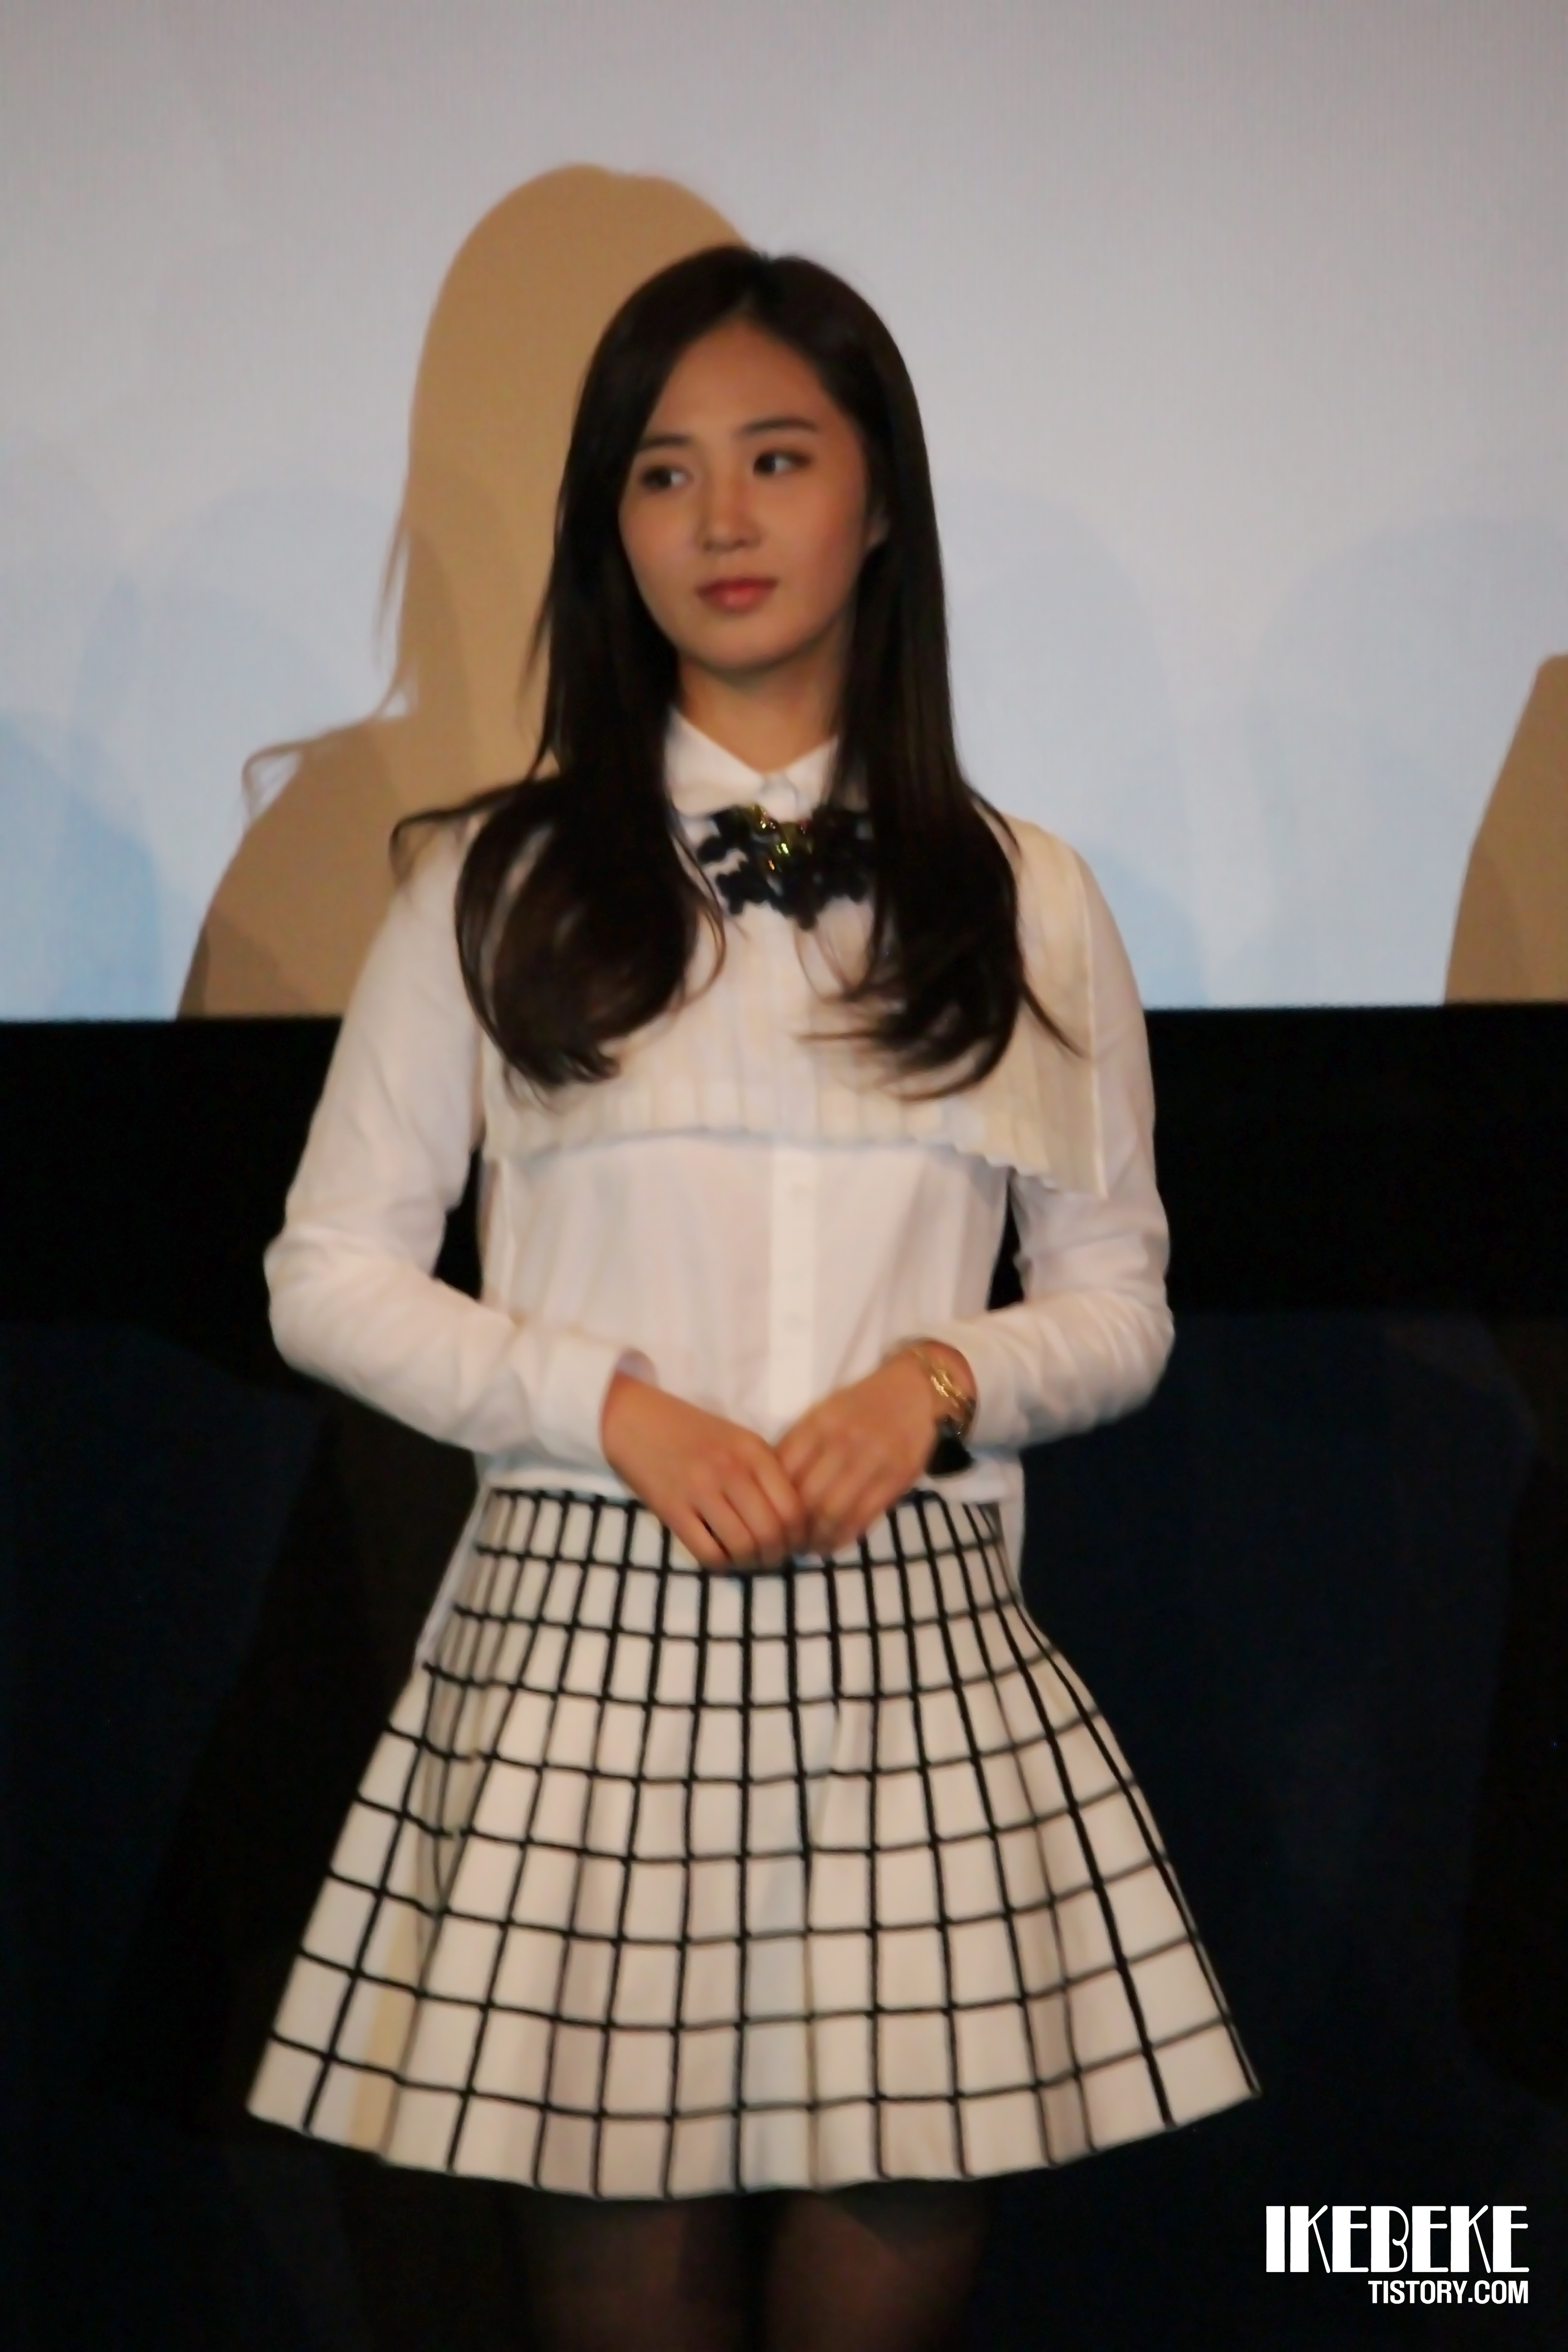 [PIC][07-11-2013]Yuri xuất hiện tại sự kiện "Lotte Cinema" Stage Greeting vào chiều nay + Selca của cô cùng các diễn viên khác 216BDF3B527D2270038B5D